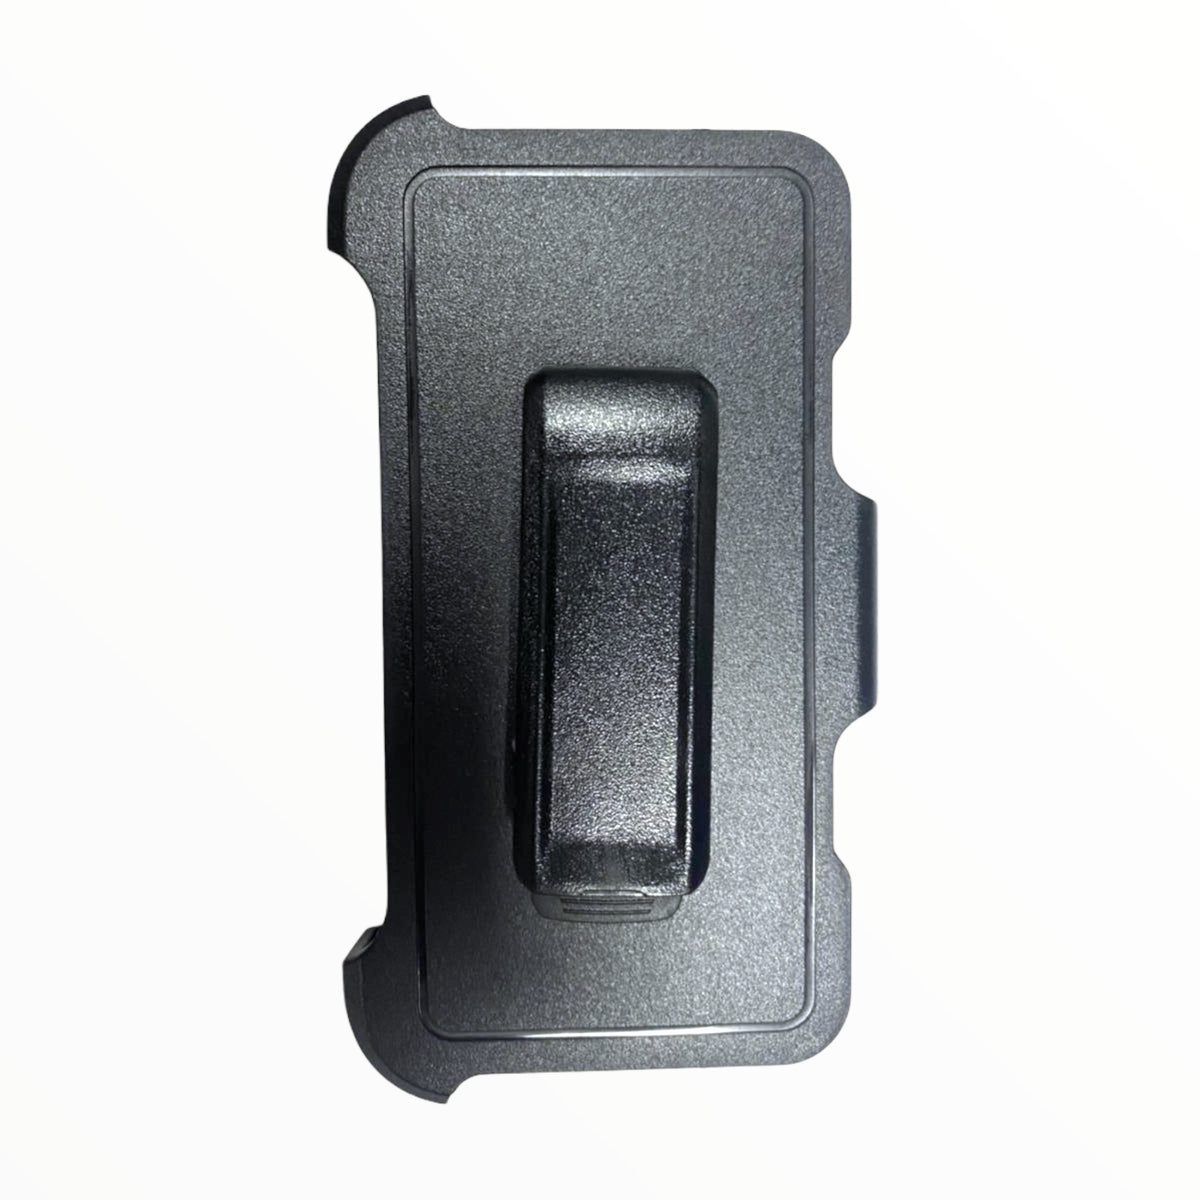 Accesorio el rey clip para estuches otterbox o defender iphone 11 (6.1) color negro